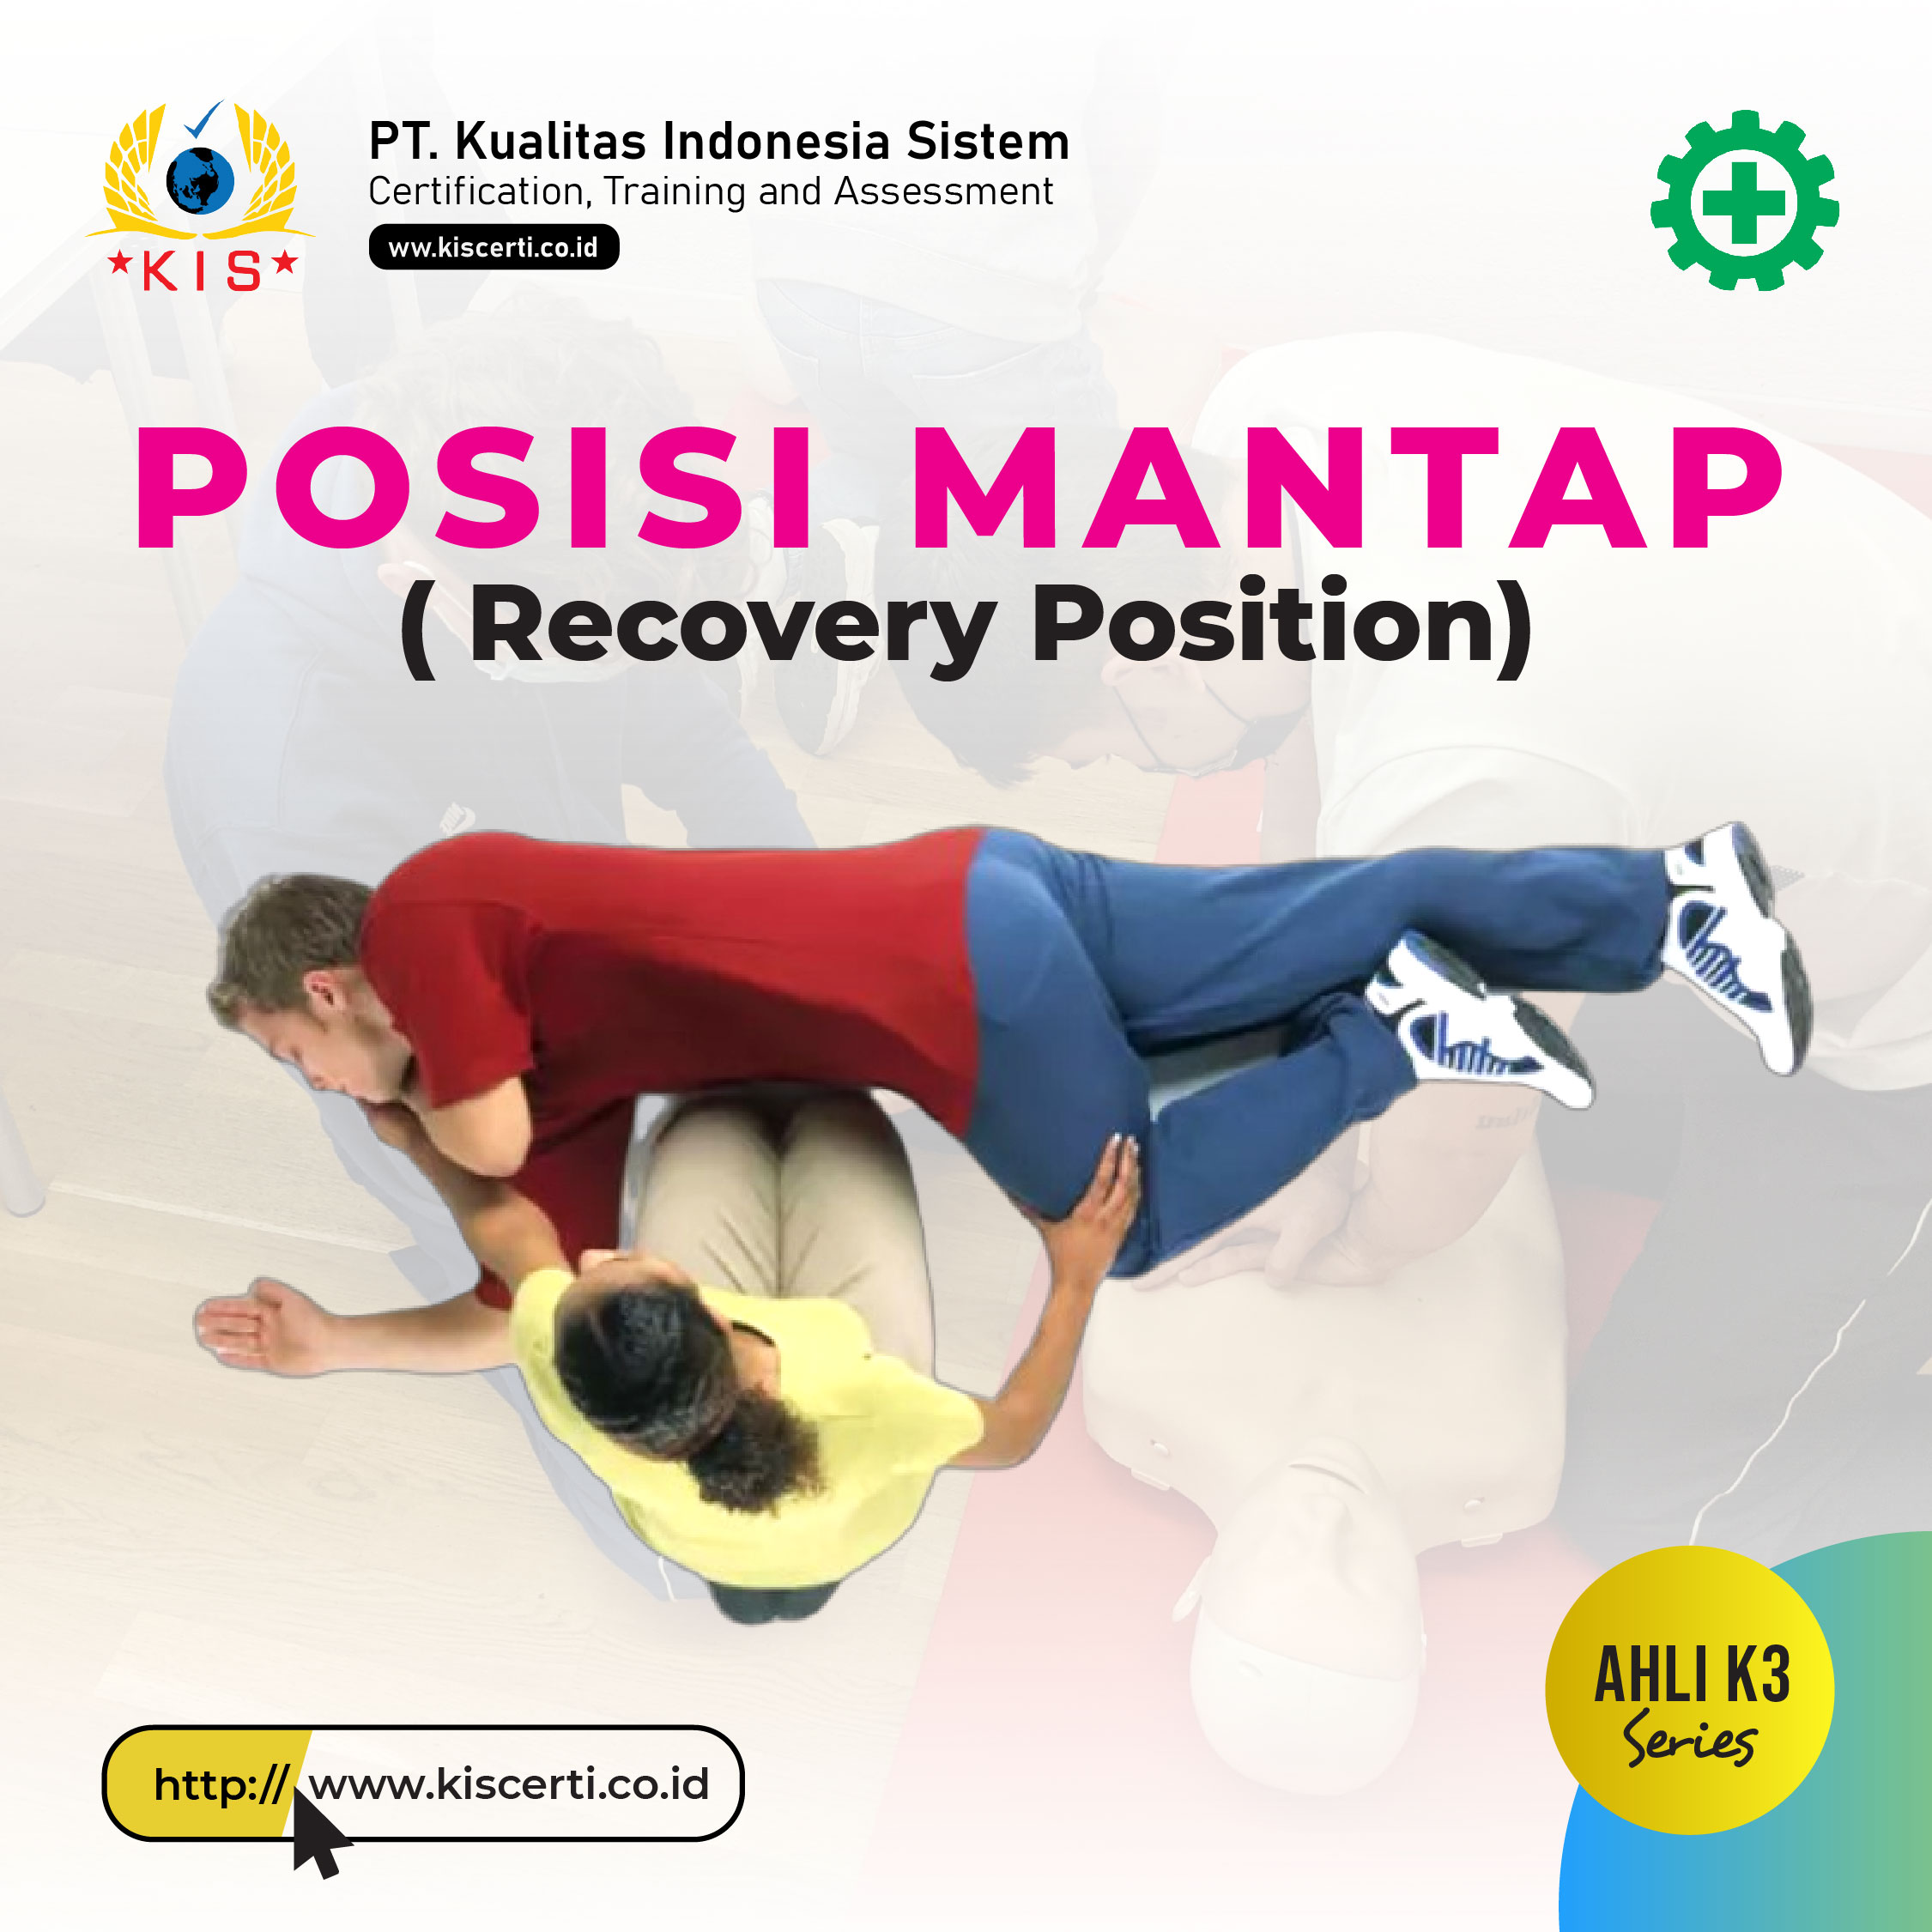 Posisi Mantap ( Recovery Position ) atau Posisi Miring Mantap 